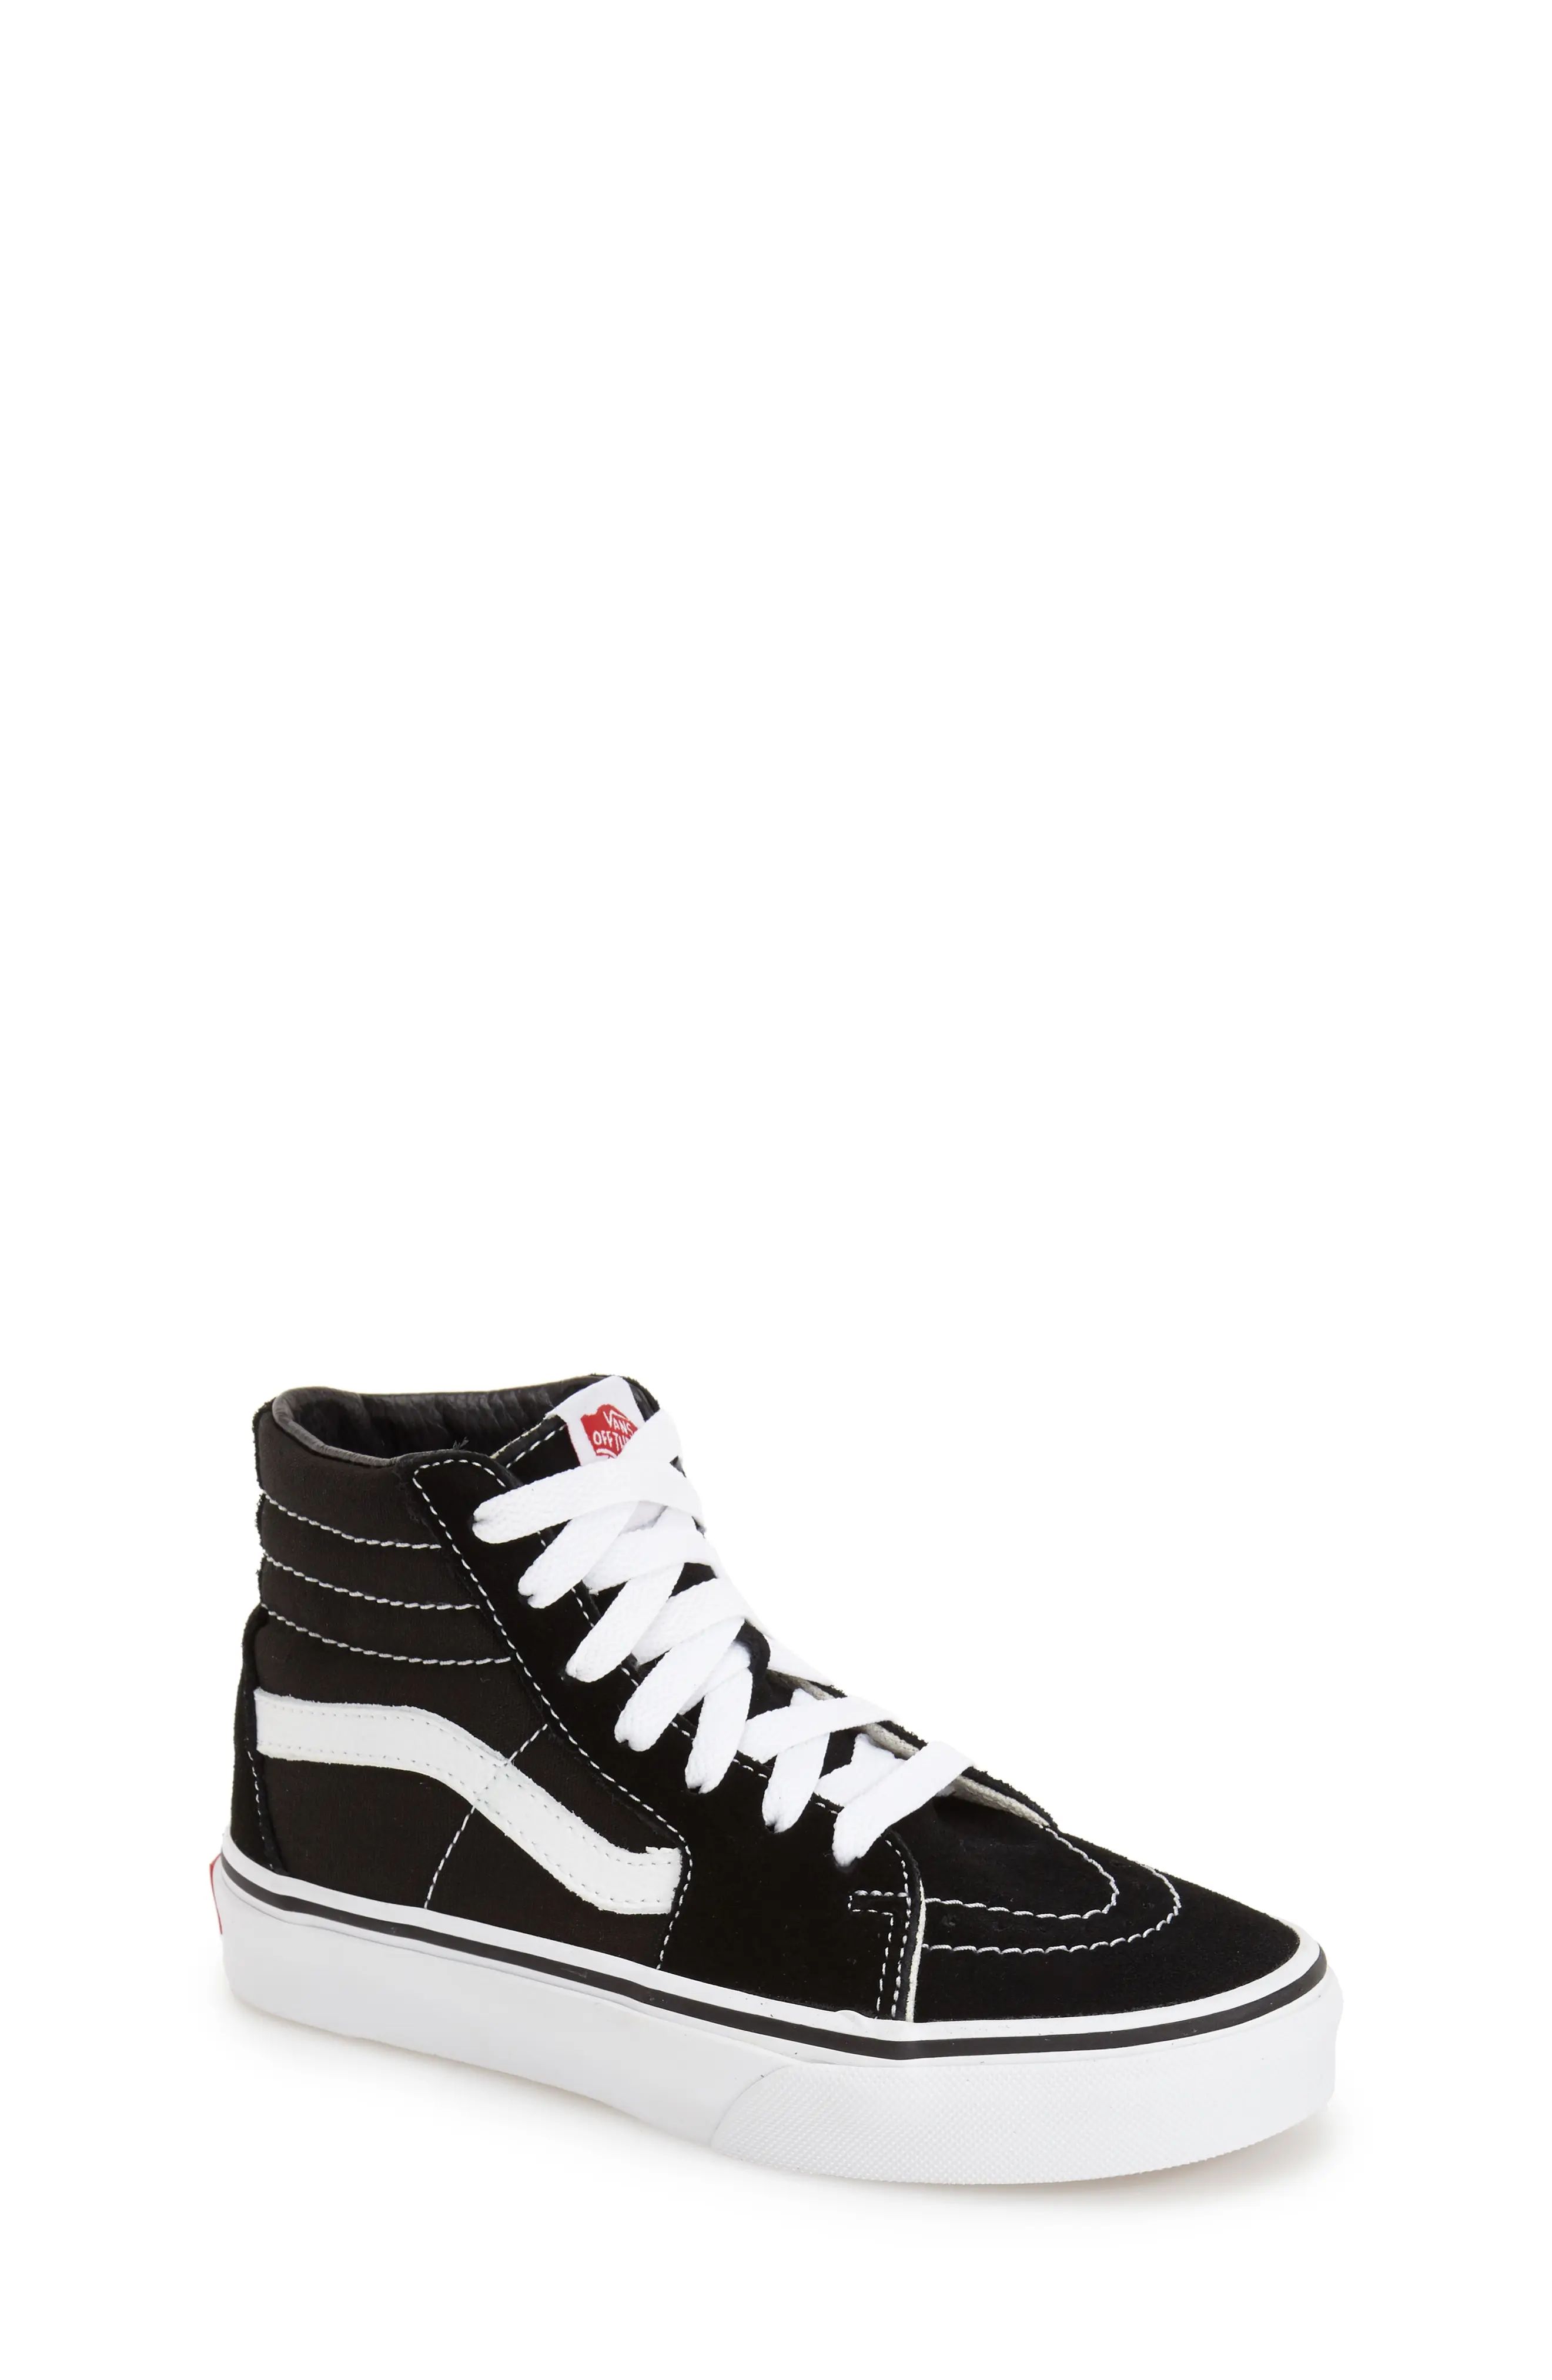 Toddler Vans 'Sk8-Hi' Sneaker, Size 2 M - Black | Nordstrom